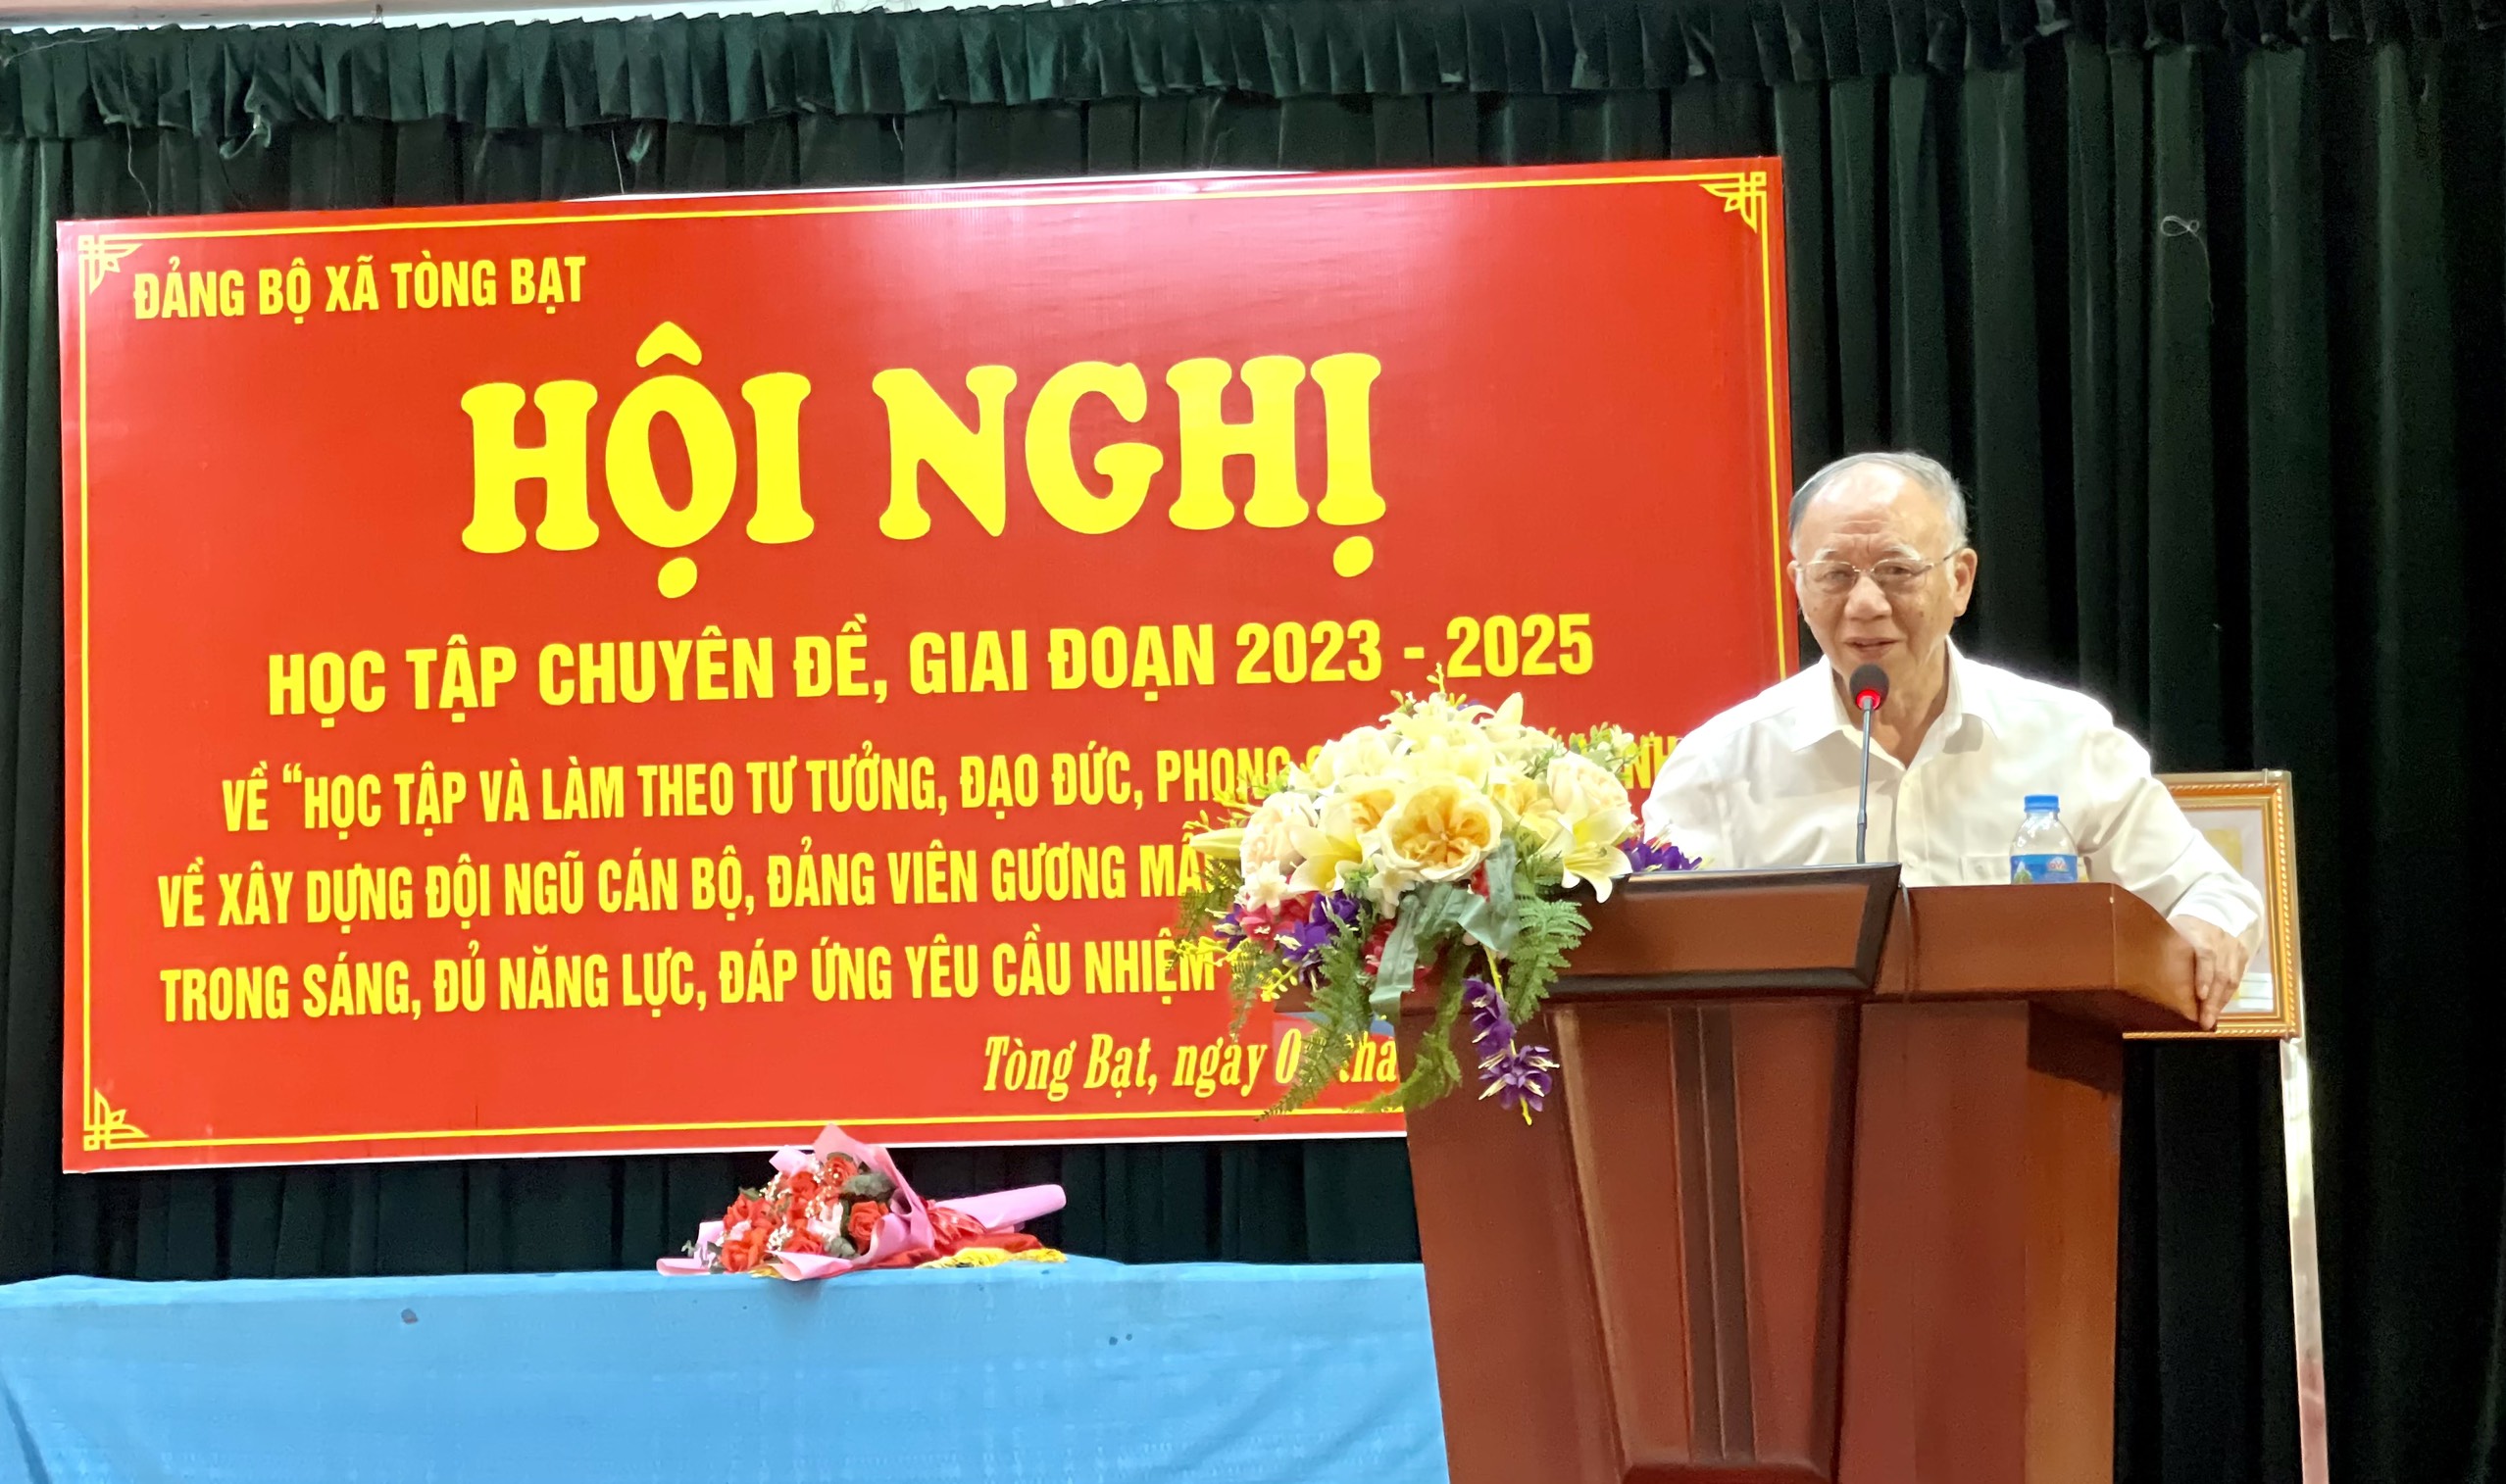 Giáo sư, tiến sĩ Hoàng Chí Bảo nói chuyện về tư tưởng, đạo đức, phong cách Hồ Chí Minh chuyên đề giai đoạn 2023-2025 tại xã Tòng Bạt